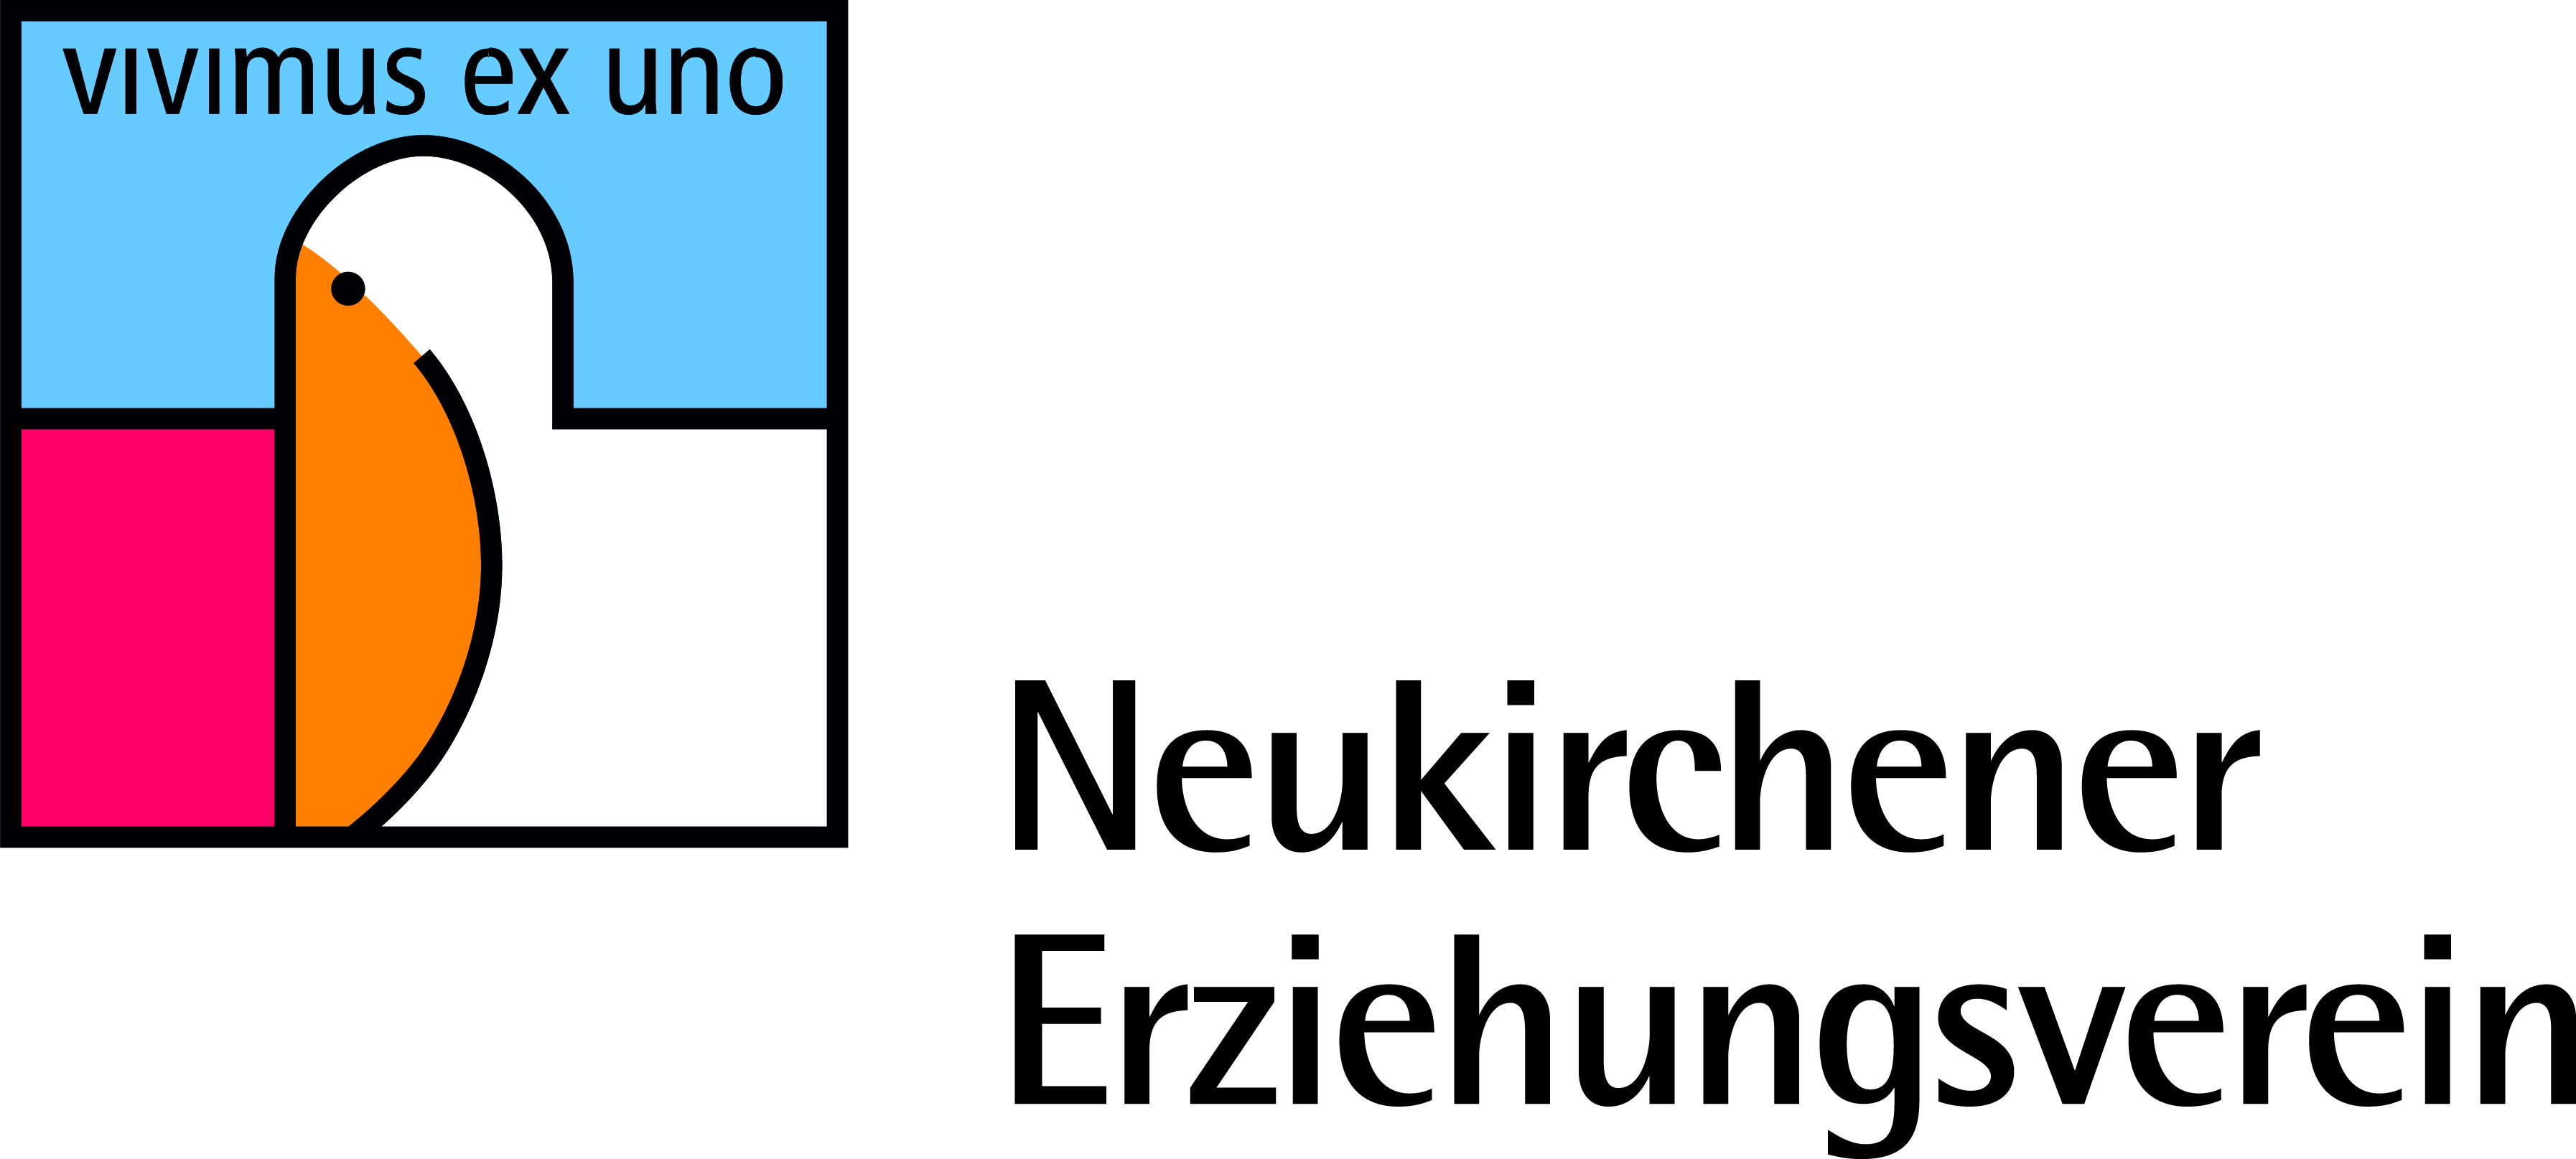 Neukirchener Kalenderverlag. 